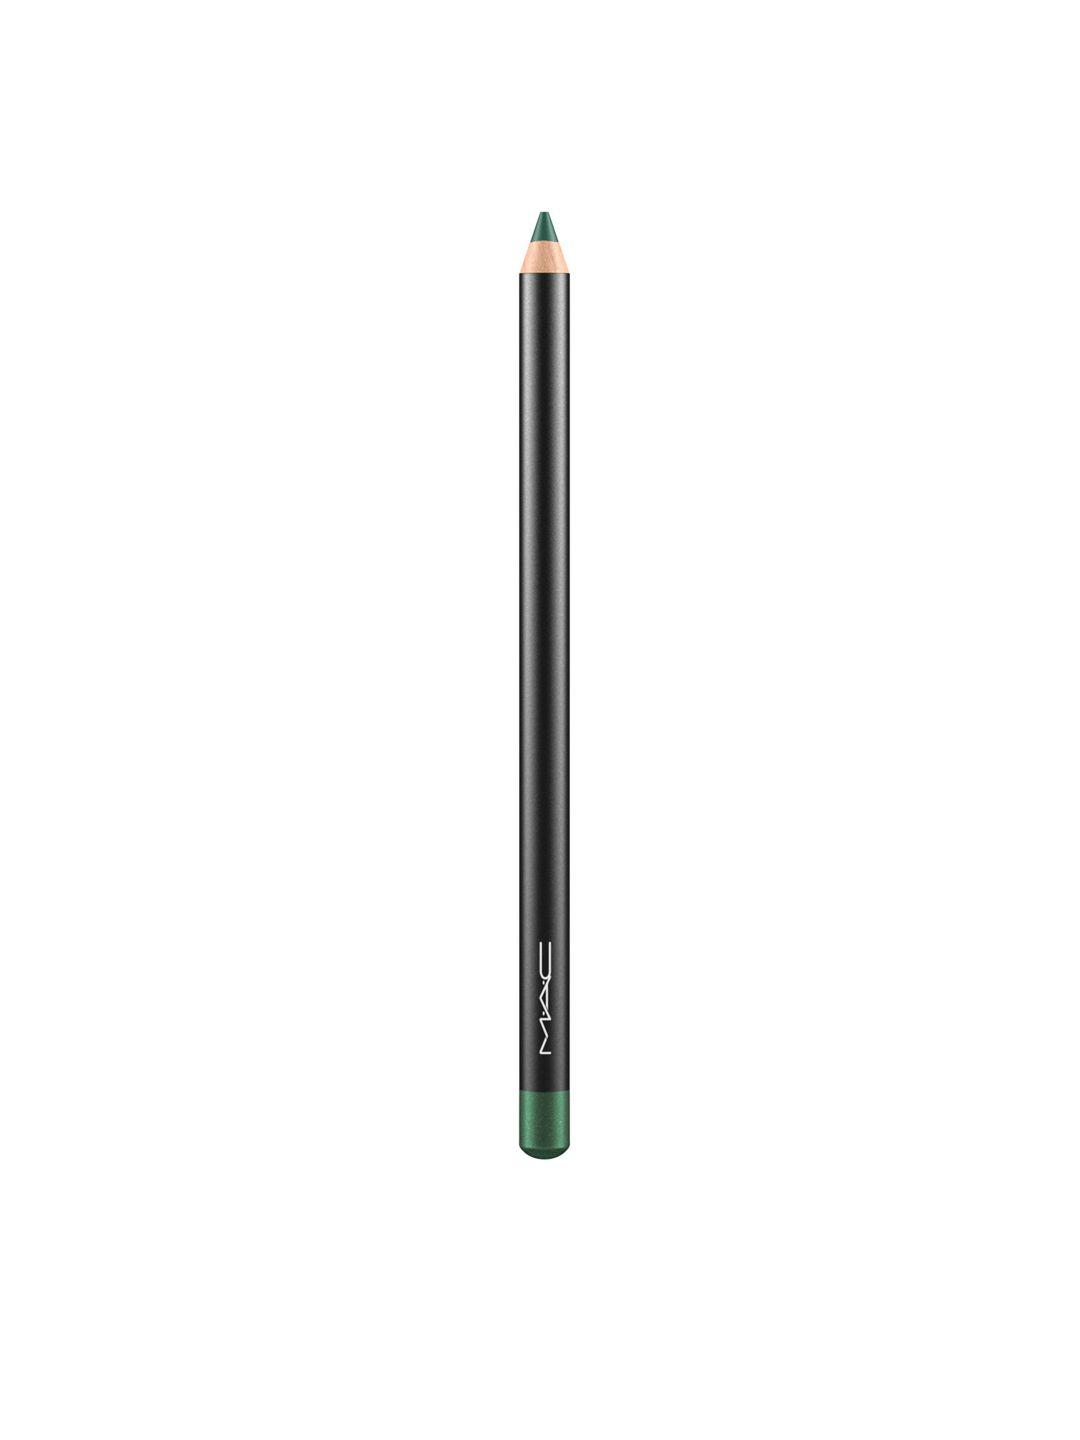 m.a.c eye kohl pencil - minted 1.36g